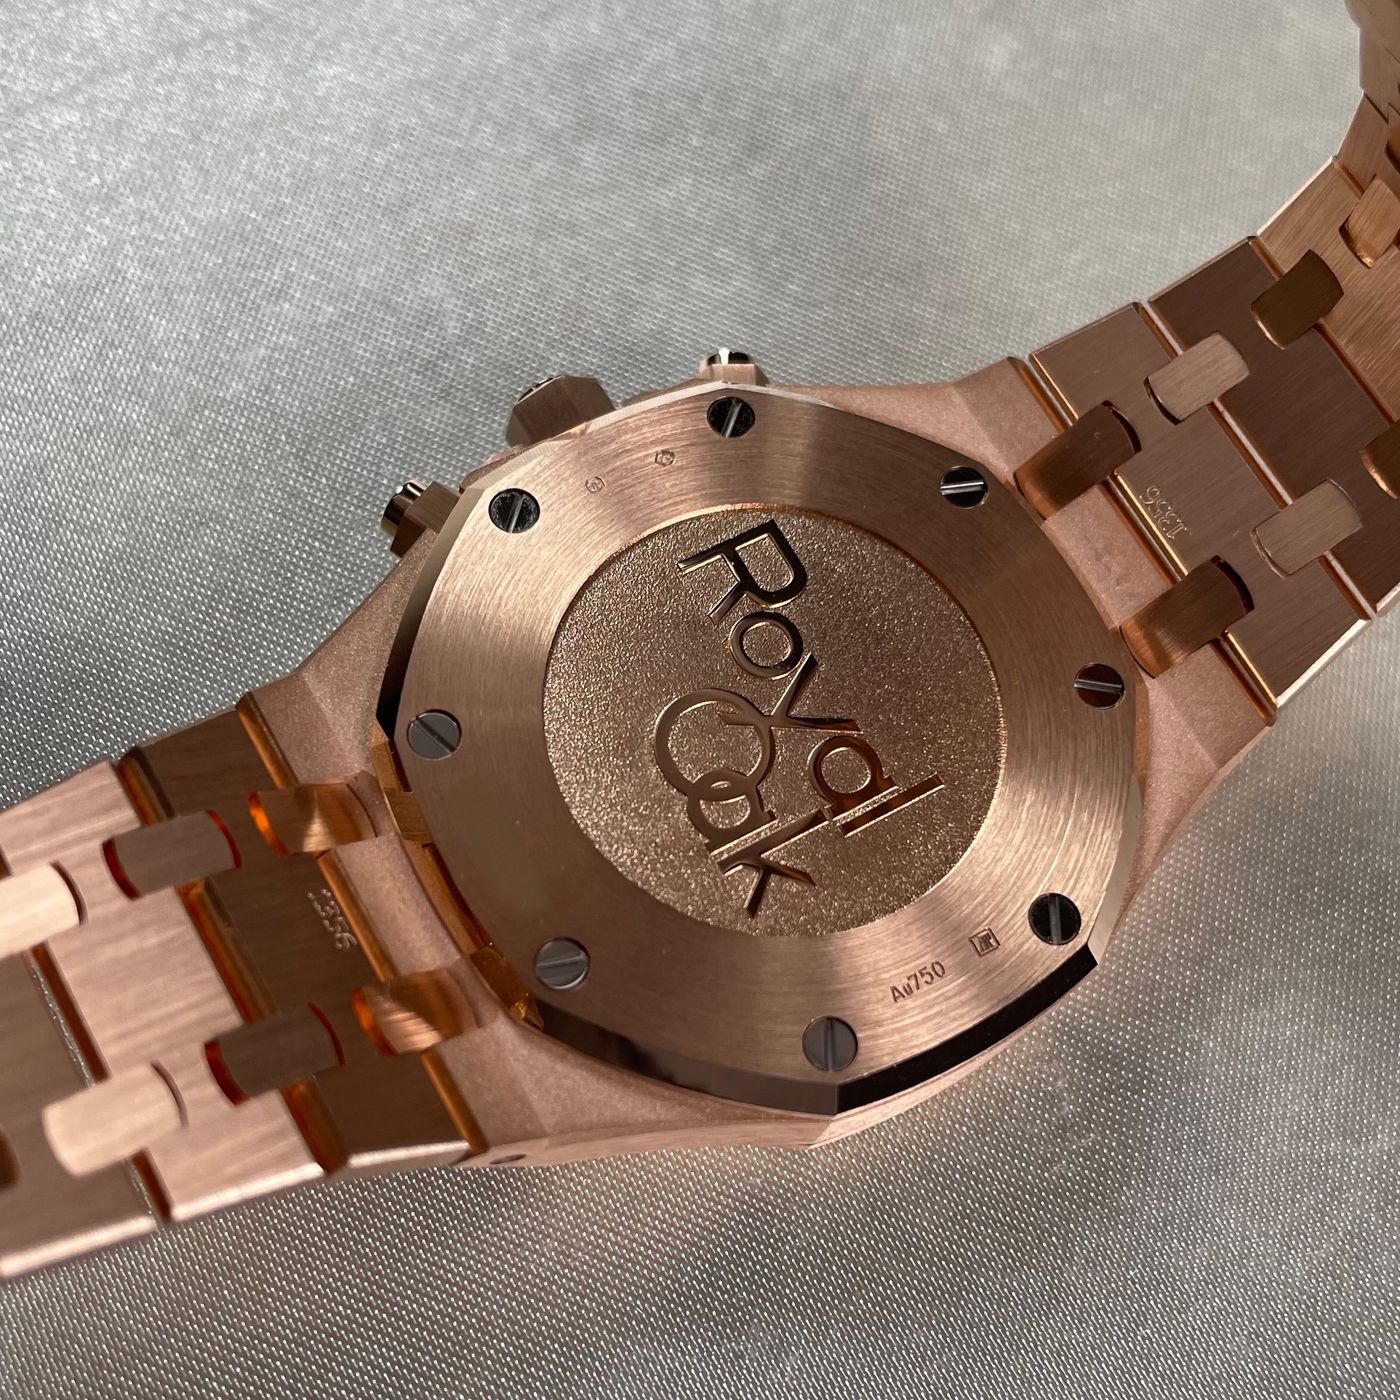 Audemars Piguet Royal Oak Selfwinding Chronograph 18K Rose Gold Unisex Watch